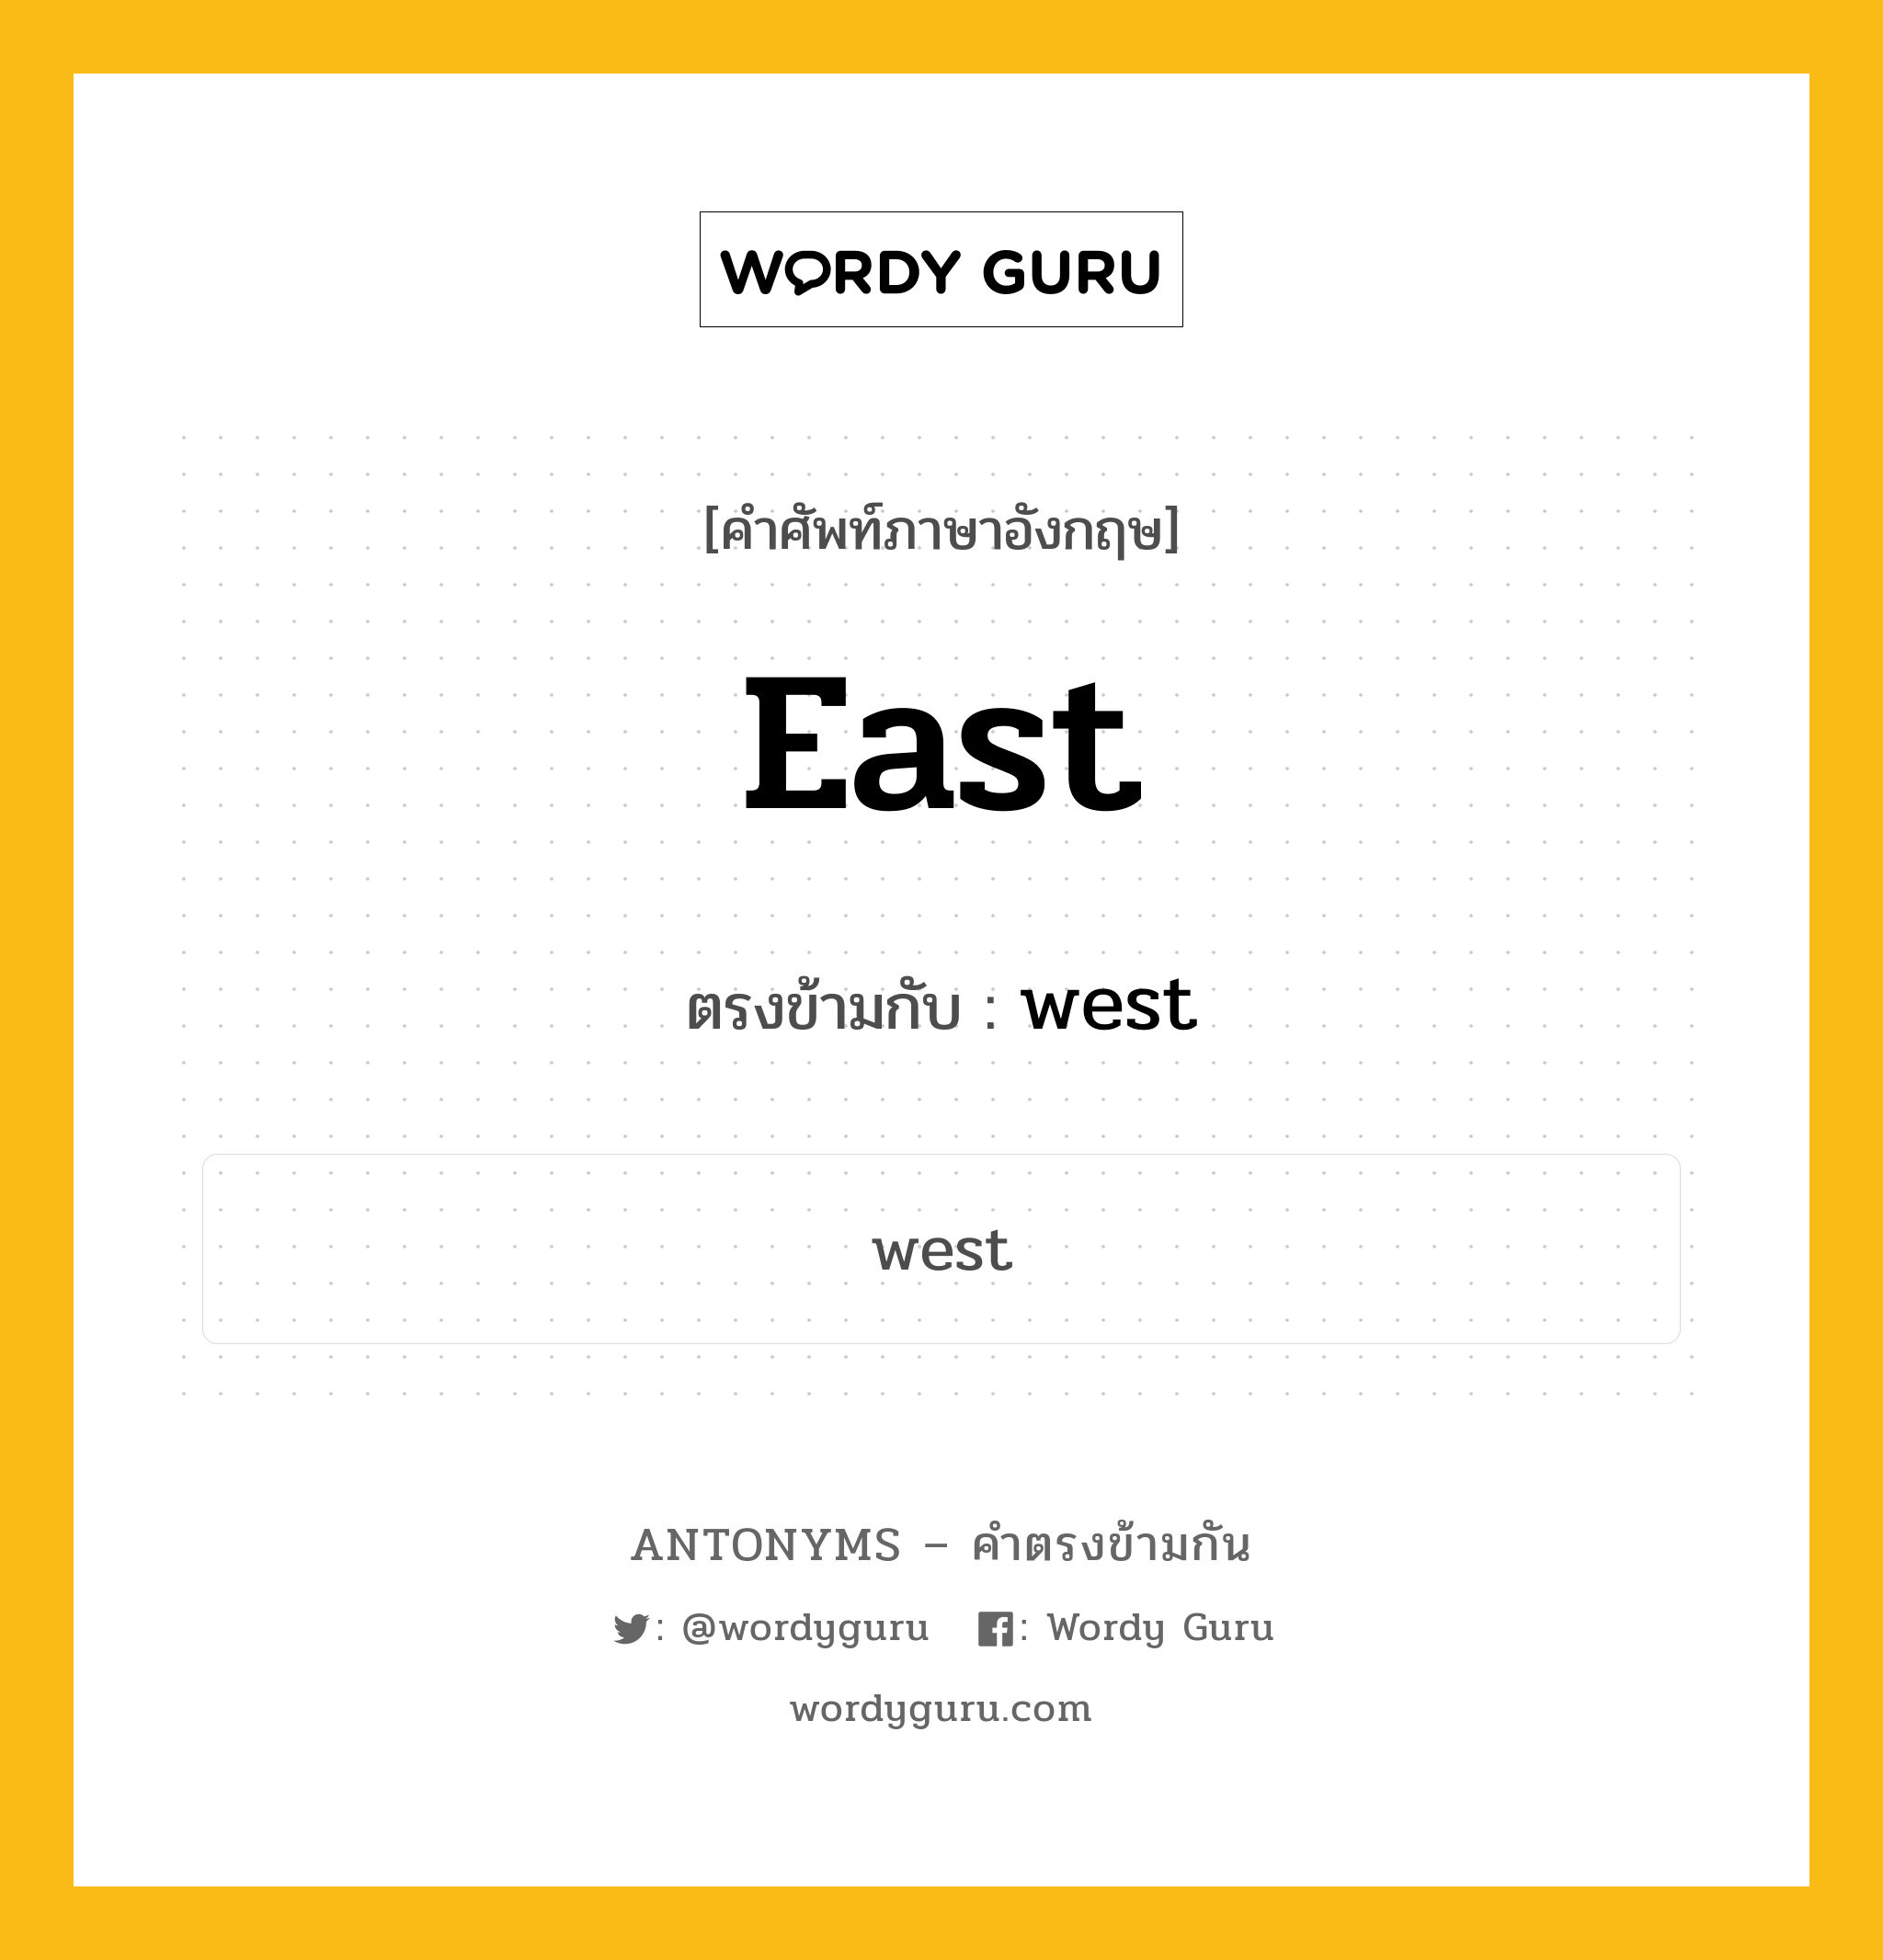 east เป็นคำตรงข้ามกับคำไหนบ้าง?, คำศัพท์ภาษาอังกฤษ east ตรงข้ามกับ west หมวด west